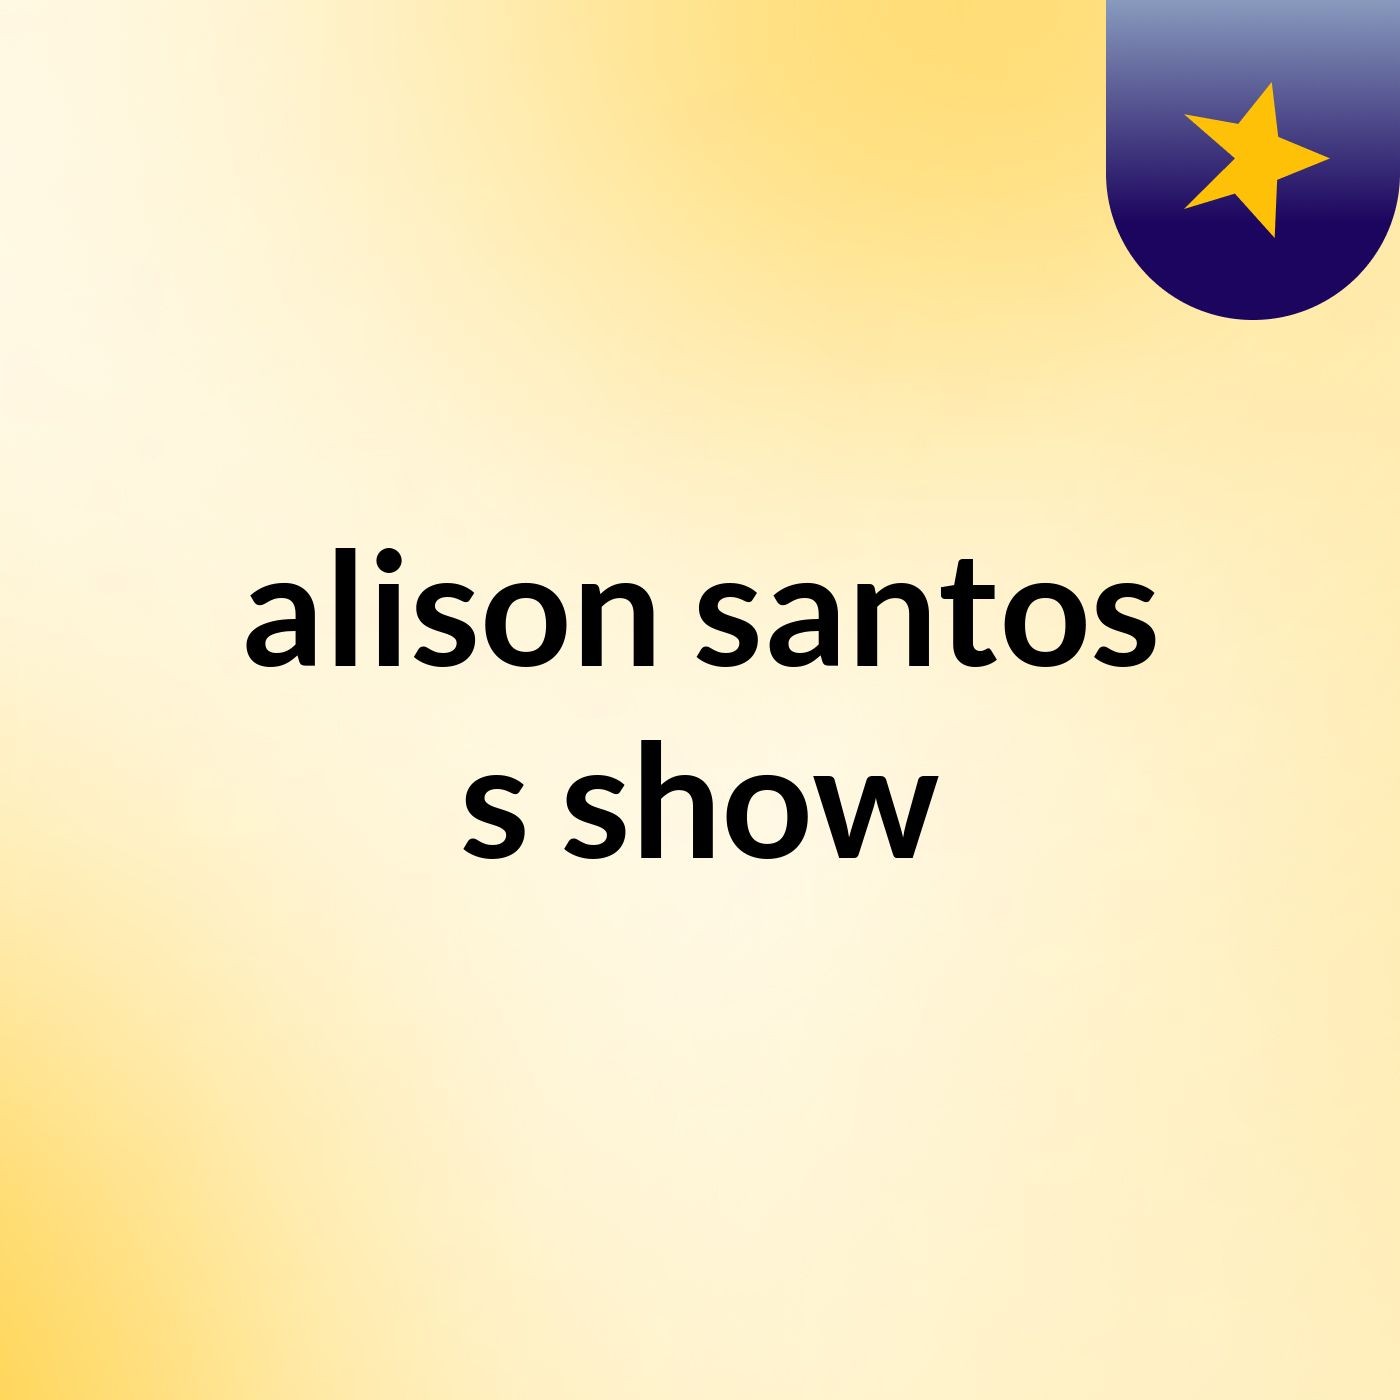 alison santos's show